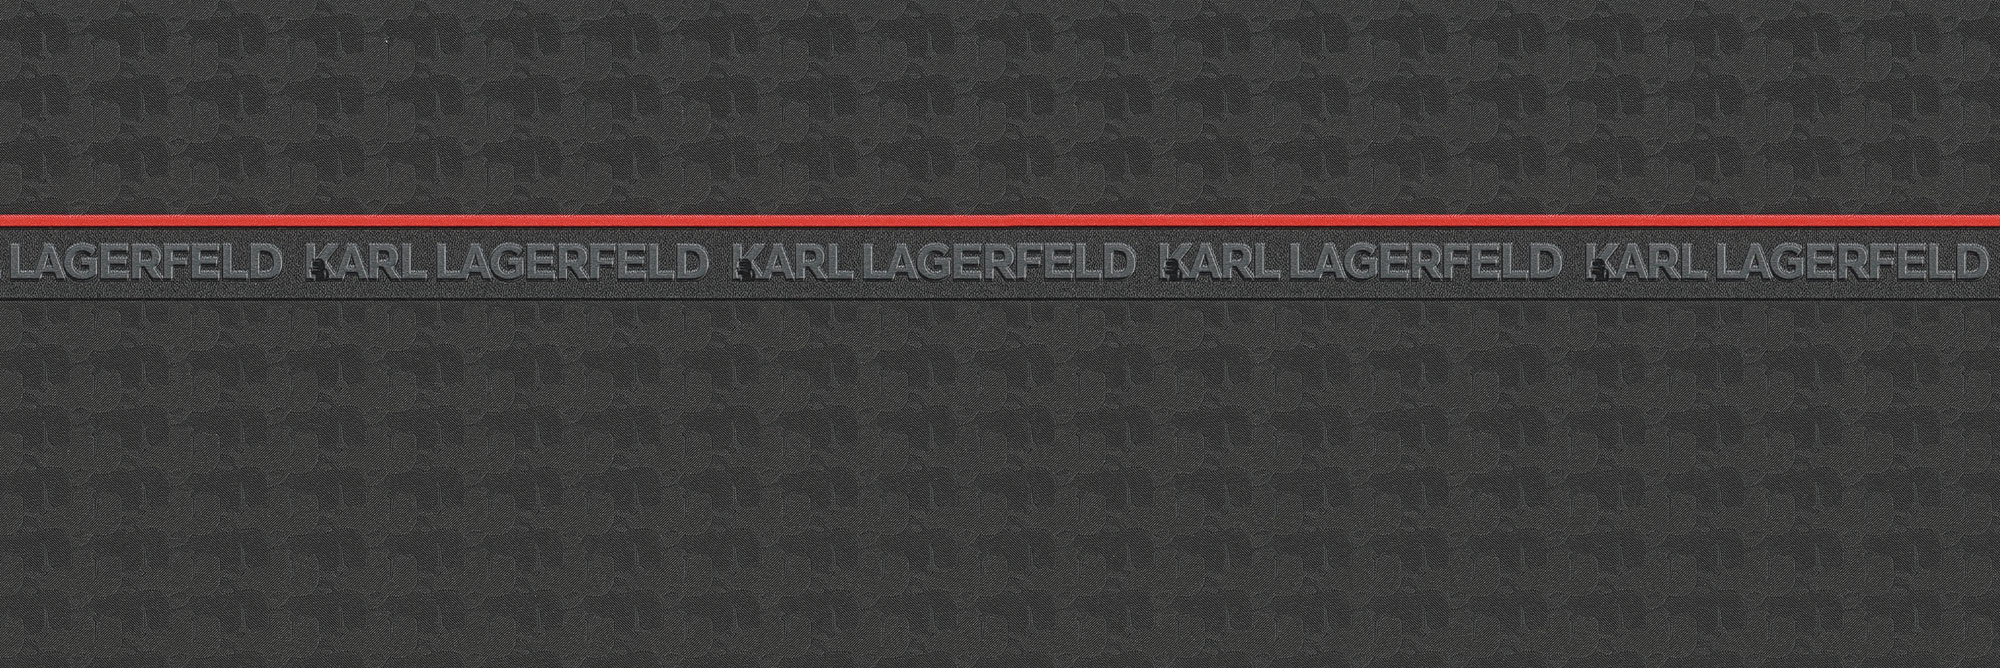 Karl Lagrefeld - atemporal